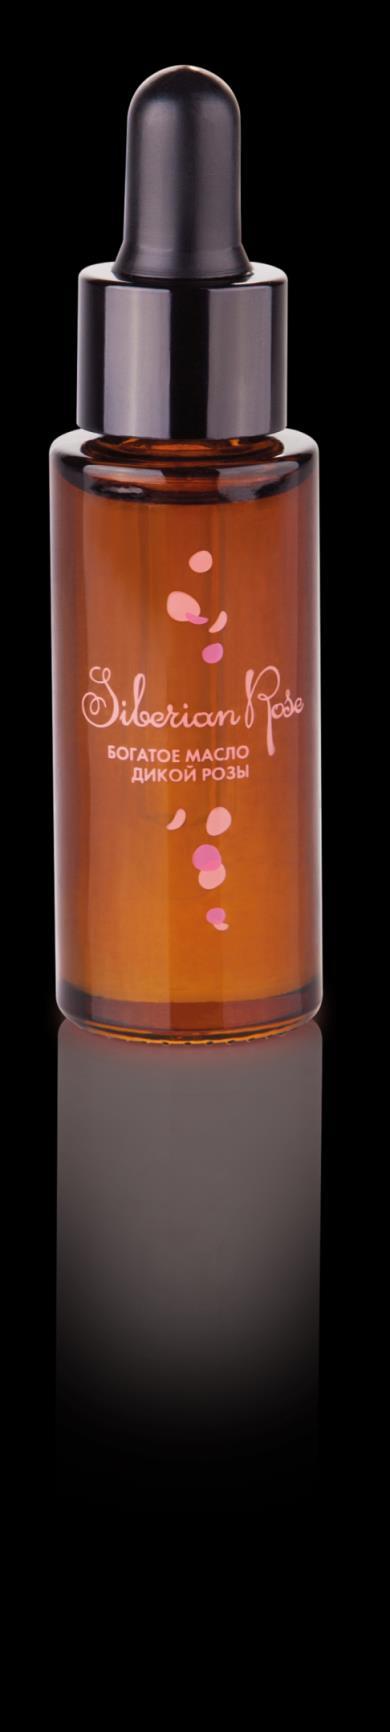 Siberian Rose Reichhaltiges Öl der Wildrose Das reichhaltige Öl der Wildrose ist ideal für eine intensive Hautpflege.